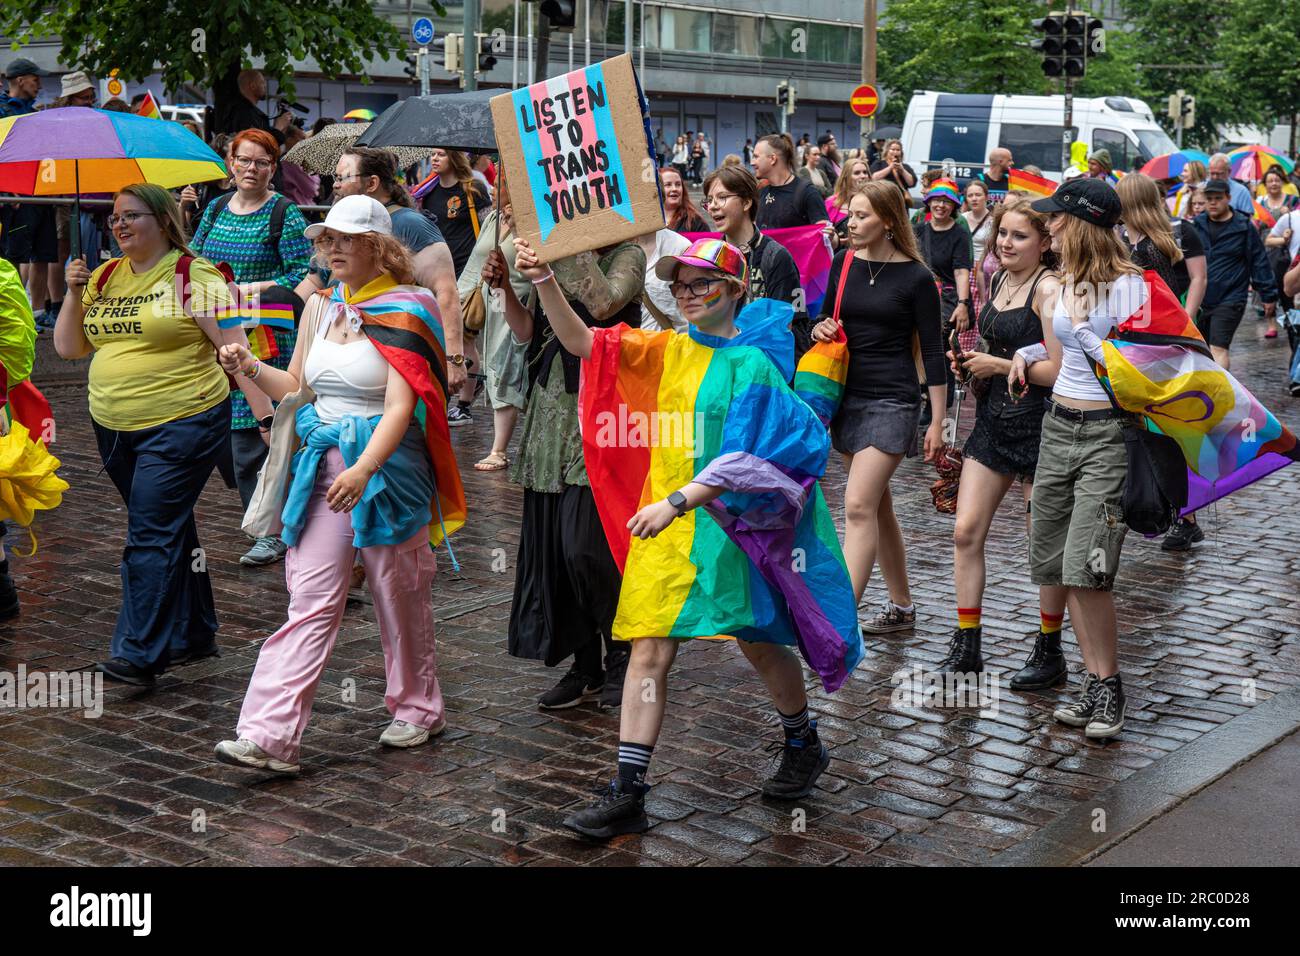 Hör auf Transjugend. Teilnehmer marschiert mit einem Pappschild auf der Helsinki Pride 2023 Parade in Helsinki, Finnland. Stockfoto